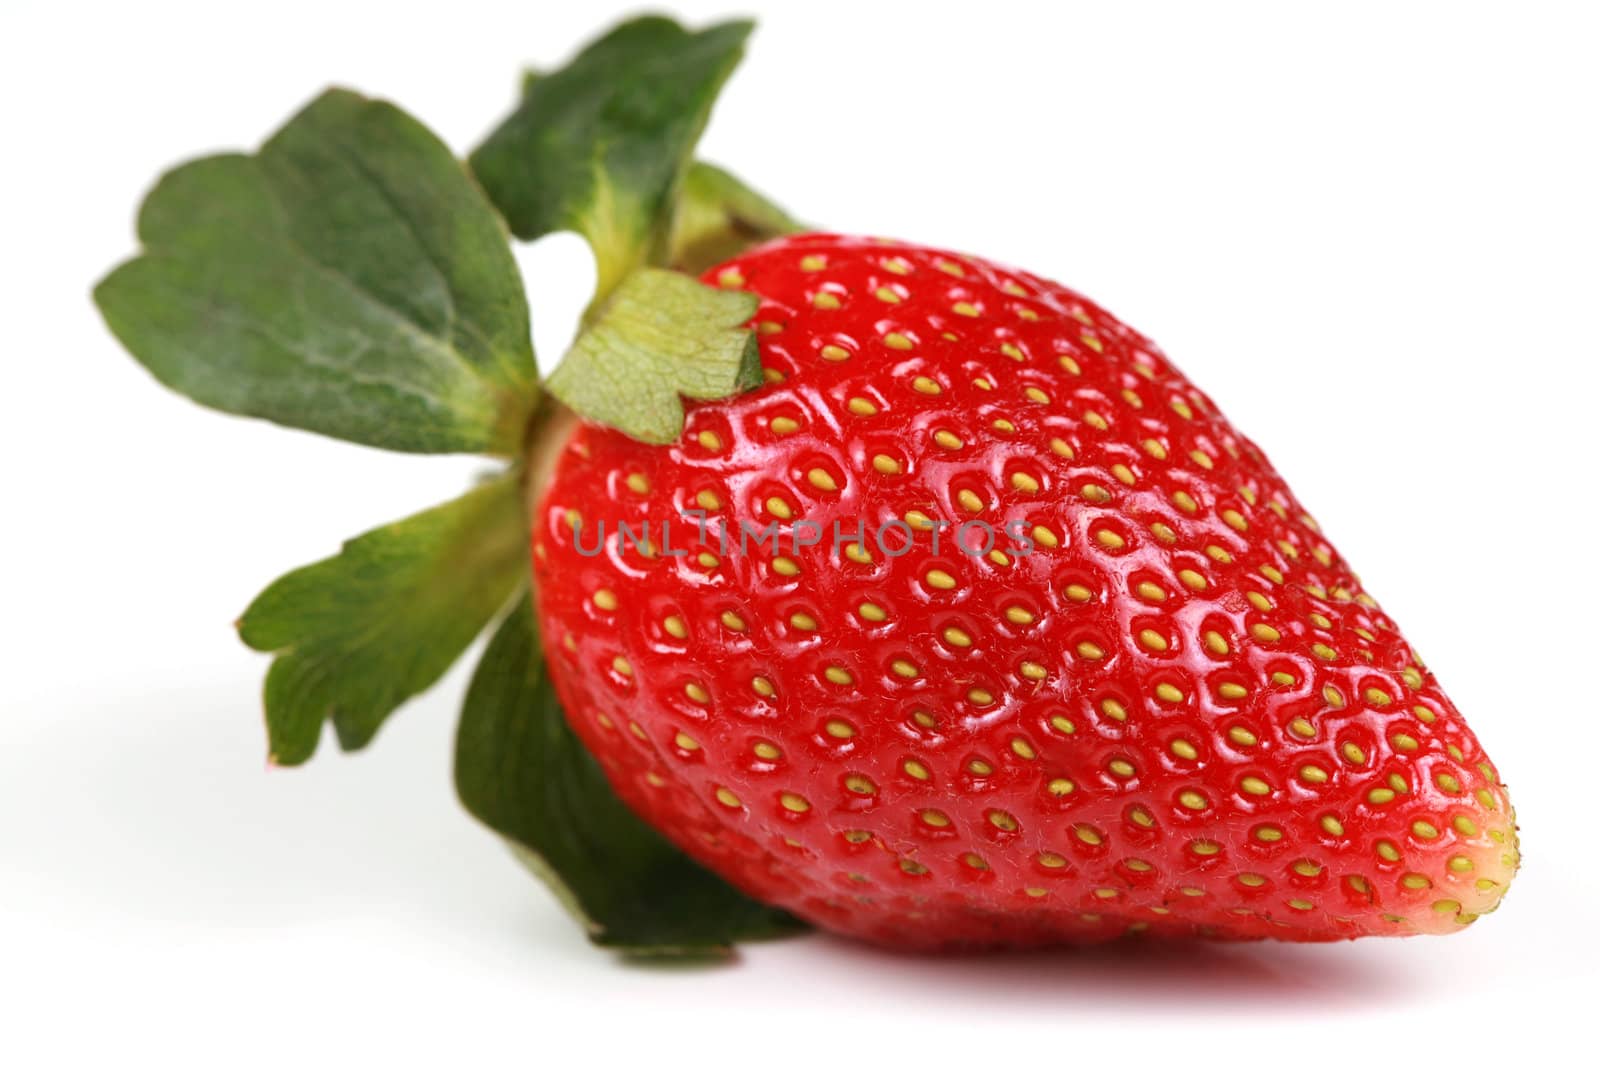 One red strawberry by jarenwicklund